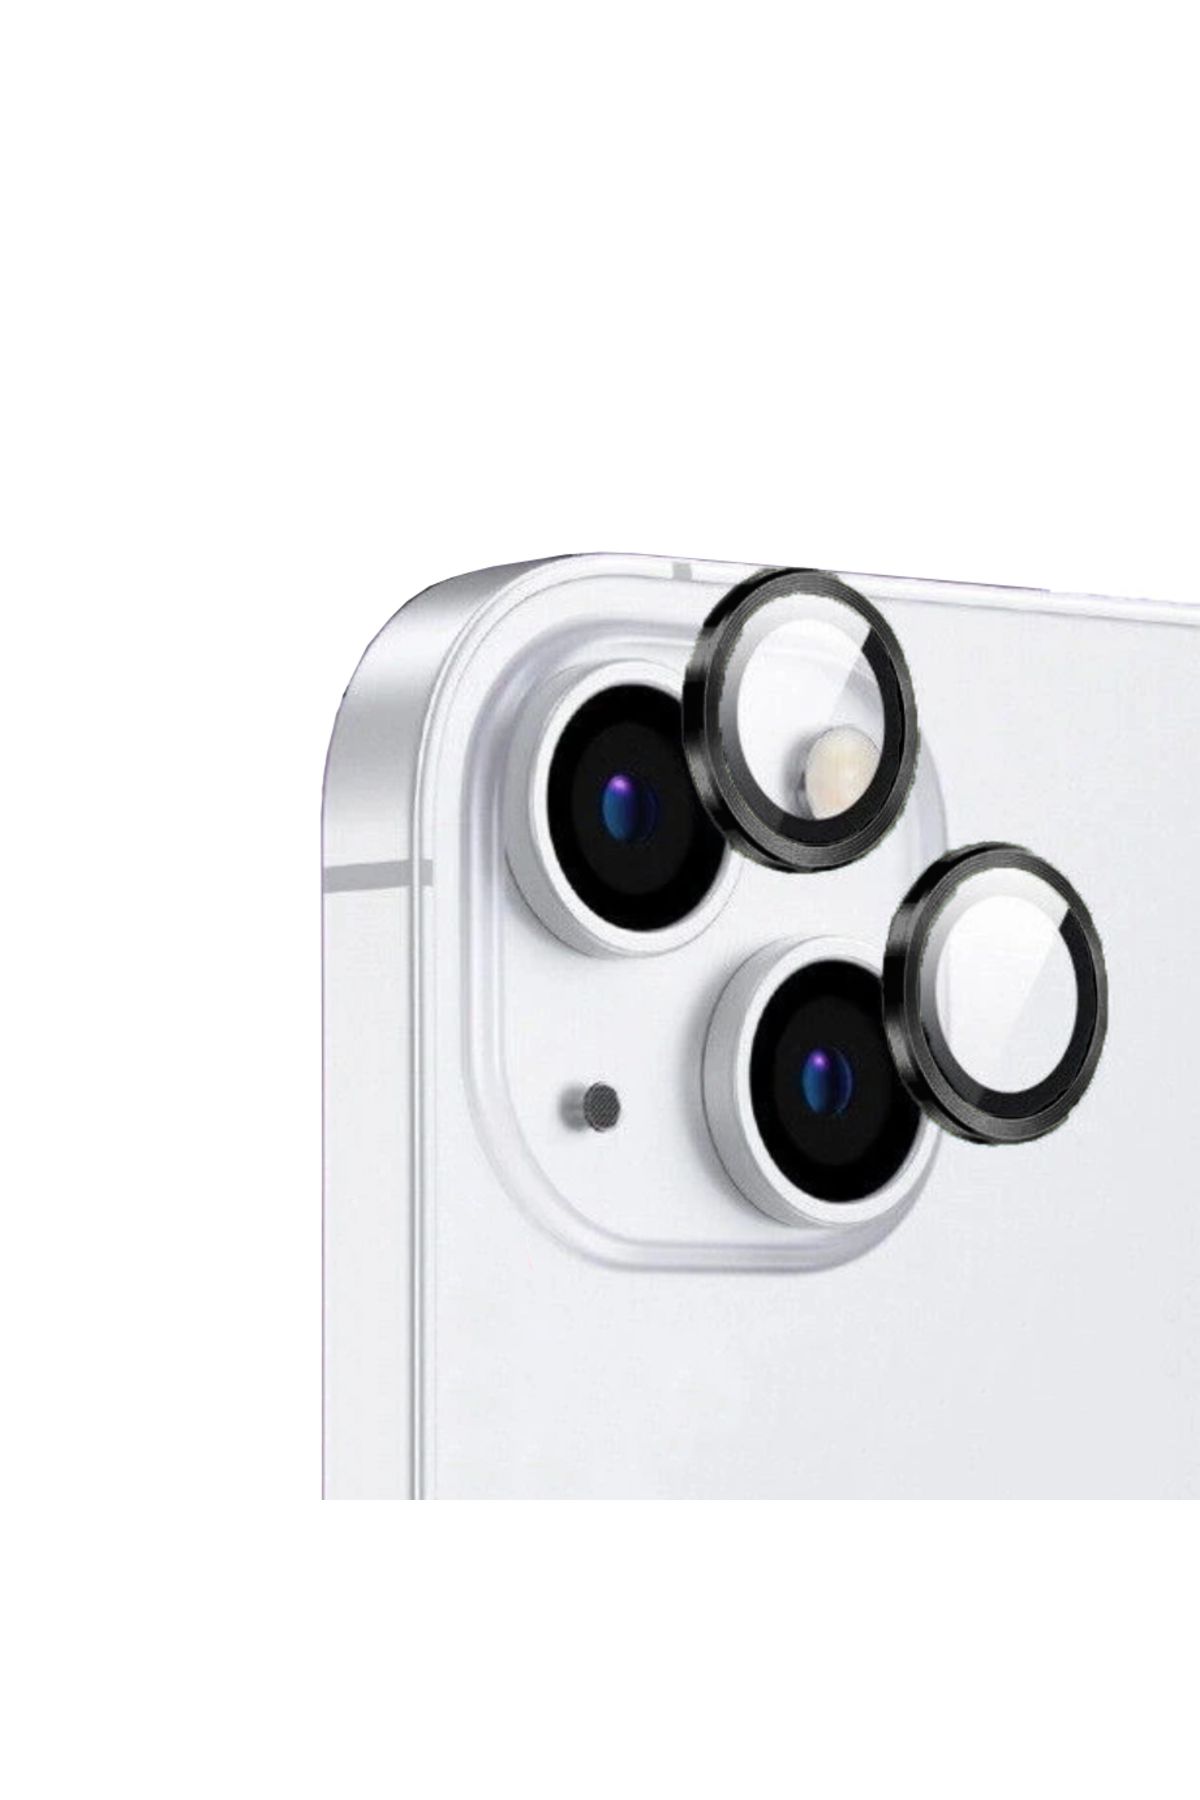 CEPCASE Apple iPhone 13 Kamera Lens Koruyucu Exclusive Premium Sapphire Tak Yapıştır Lens Koruma